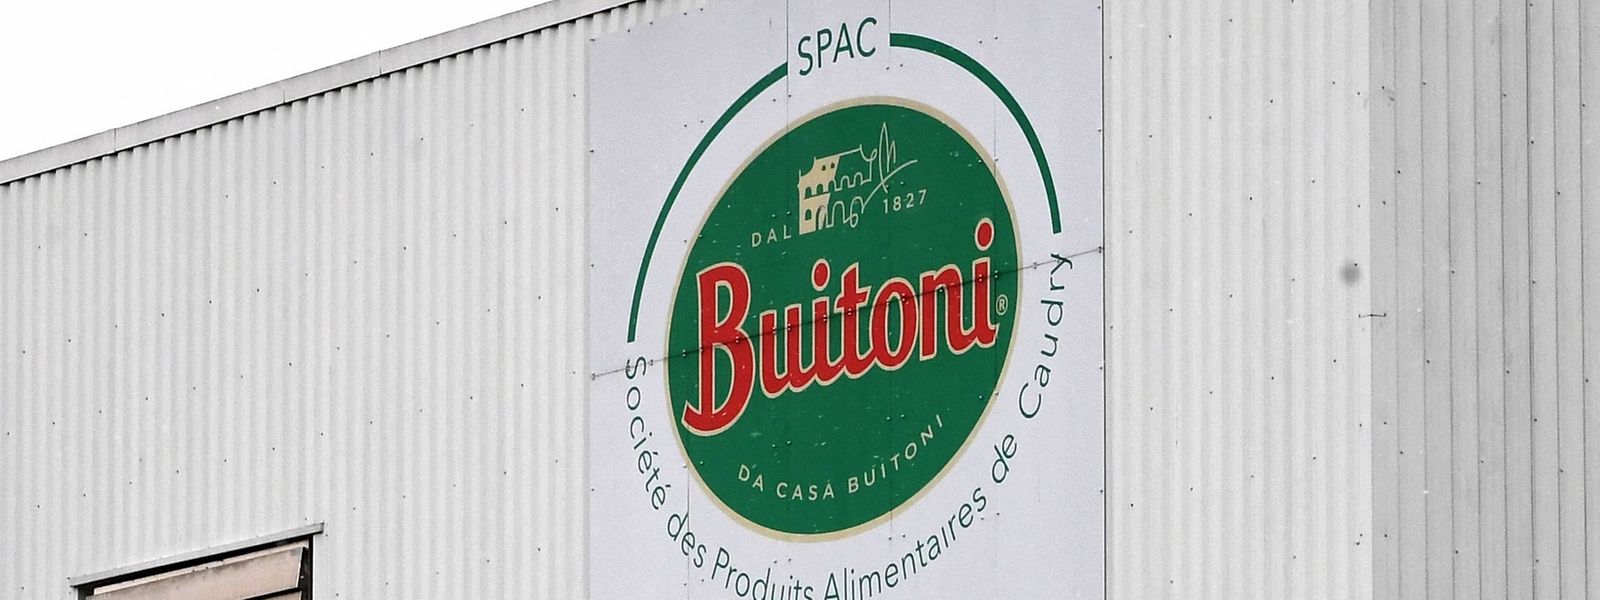 L'usine de Buitoni de Caudry a été interdite de production par la préfecture du Nord suite à deux inspections d'hygiène.